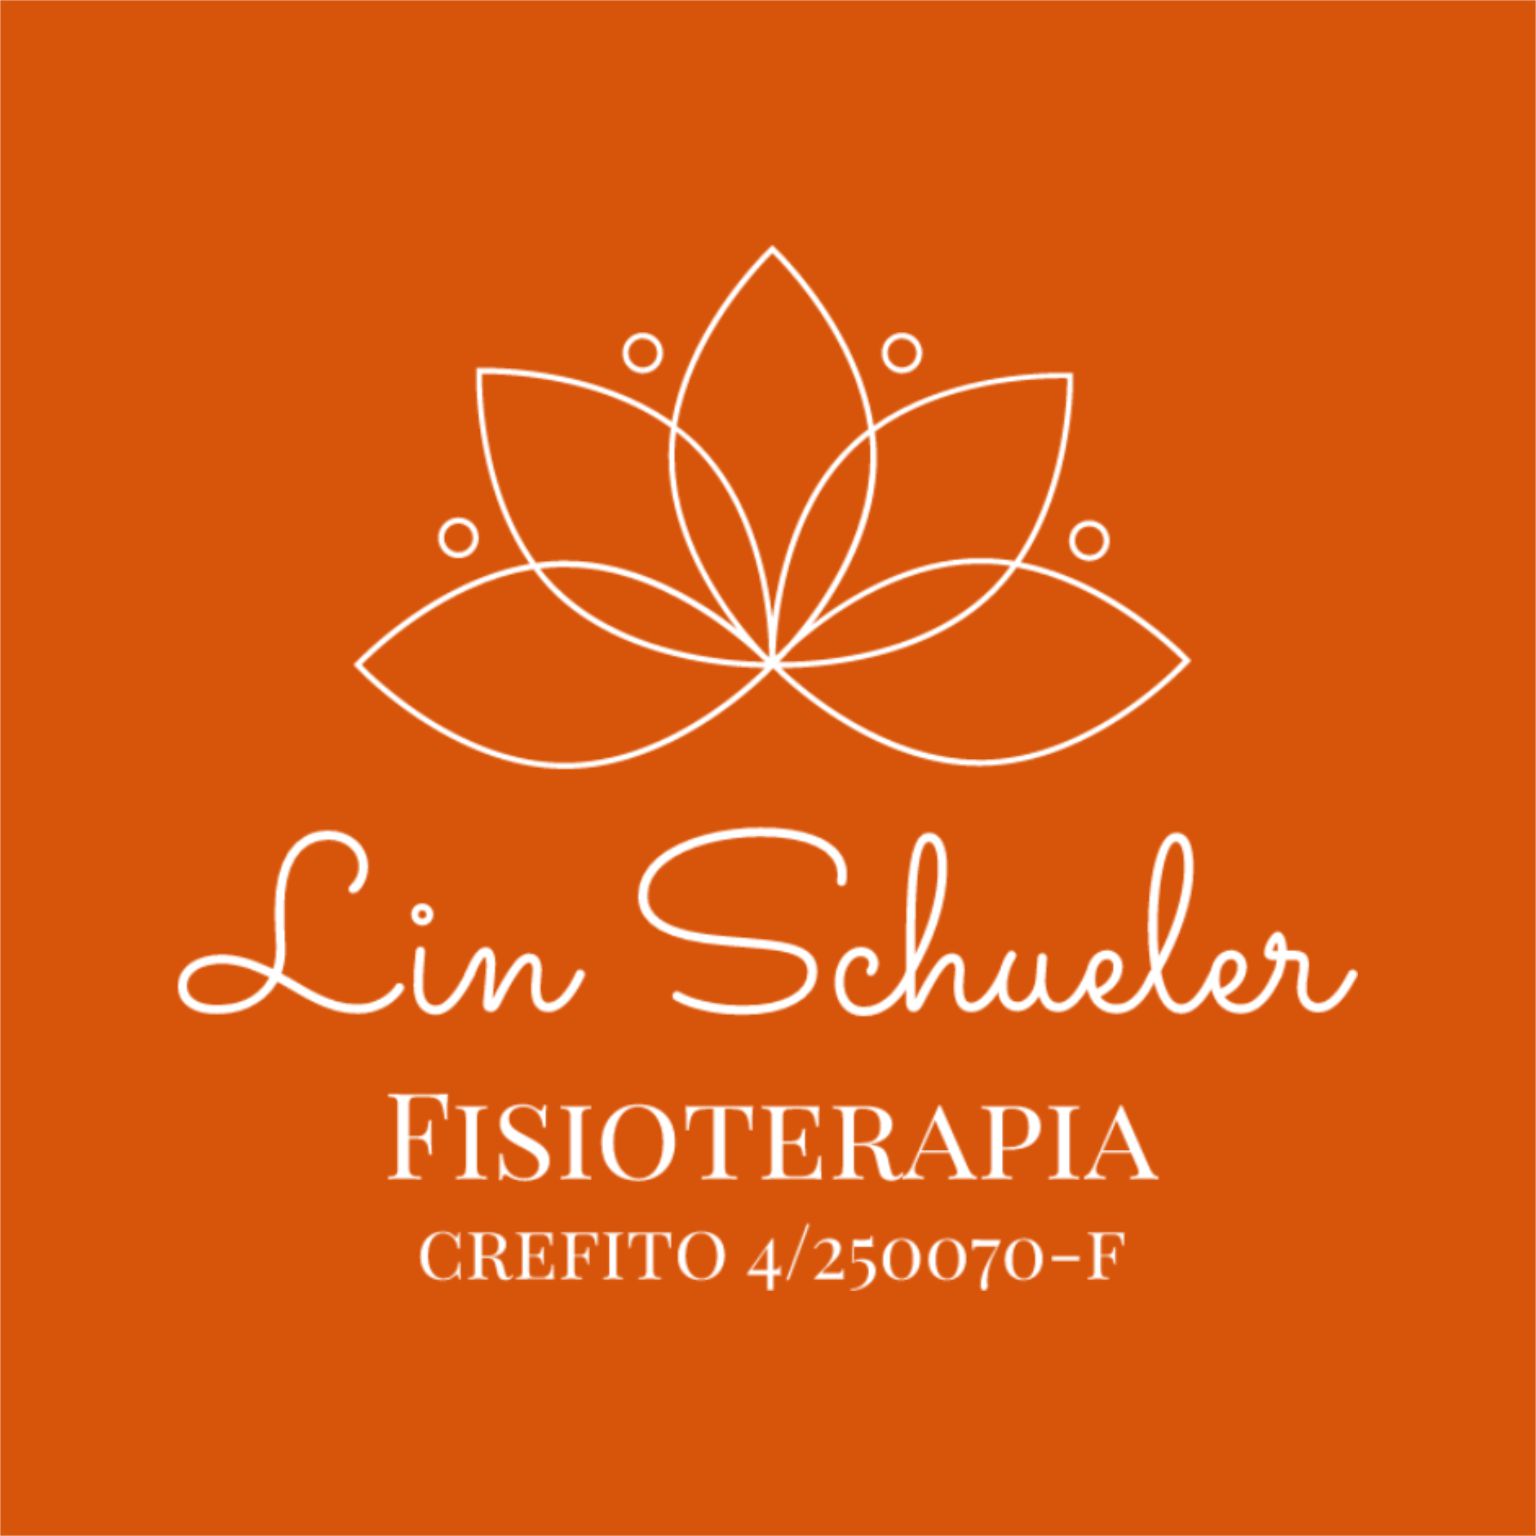 Lin Schueler Fisioterapia